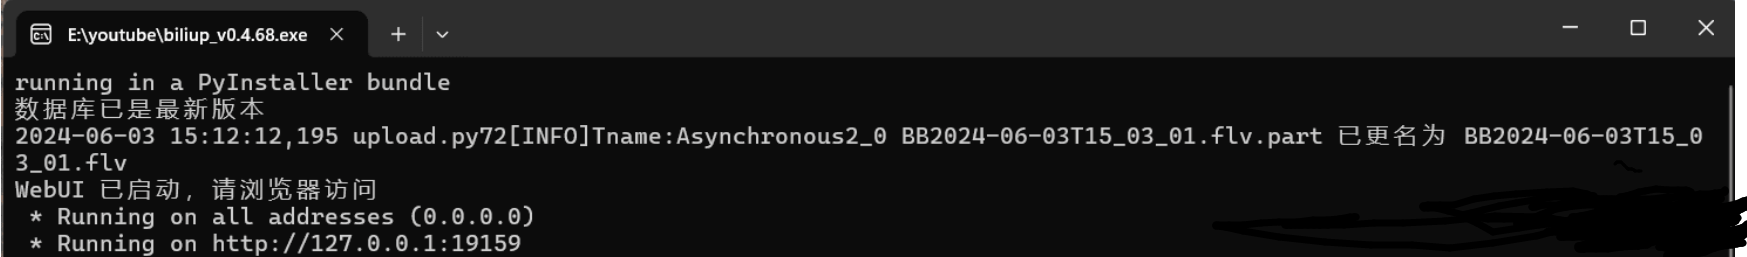 全自动录播、分p投稿工具 biliup v0.4.68 支持B站抖音快手虎牙等主流直播